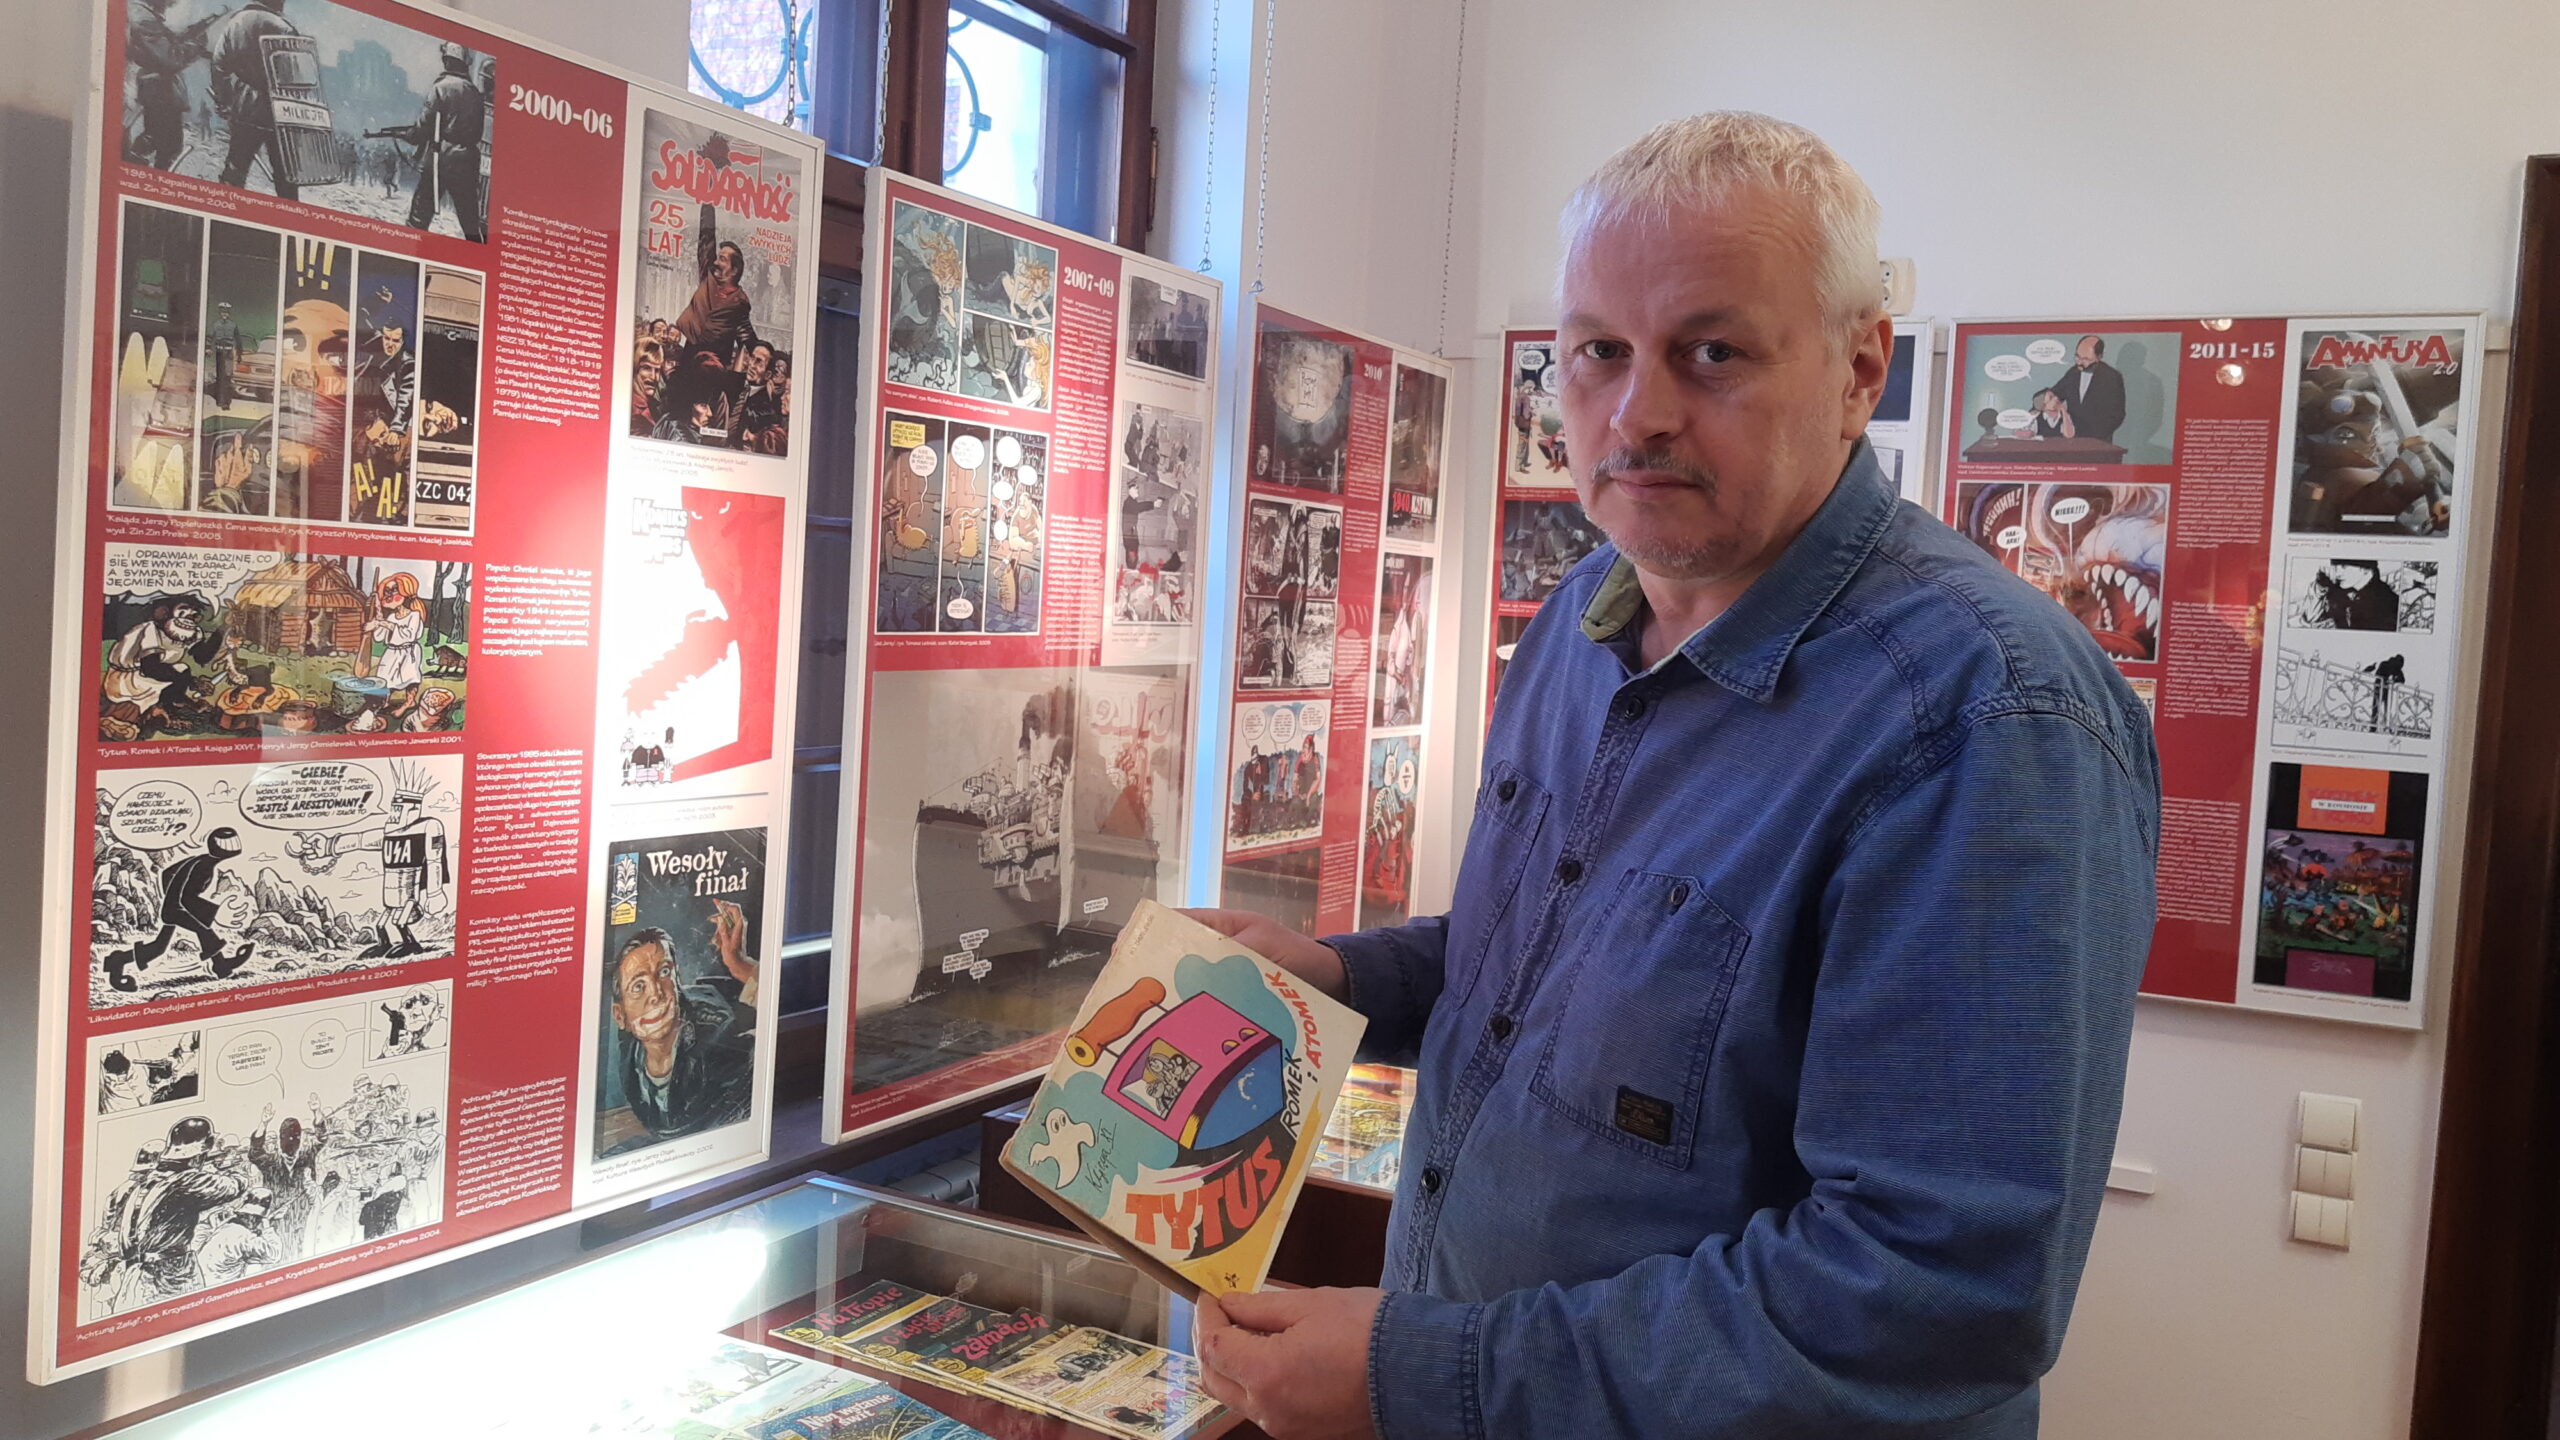 Kurator wystawy Witold Hajdasz prezentuje wystawę stworzoną w muzeum